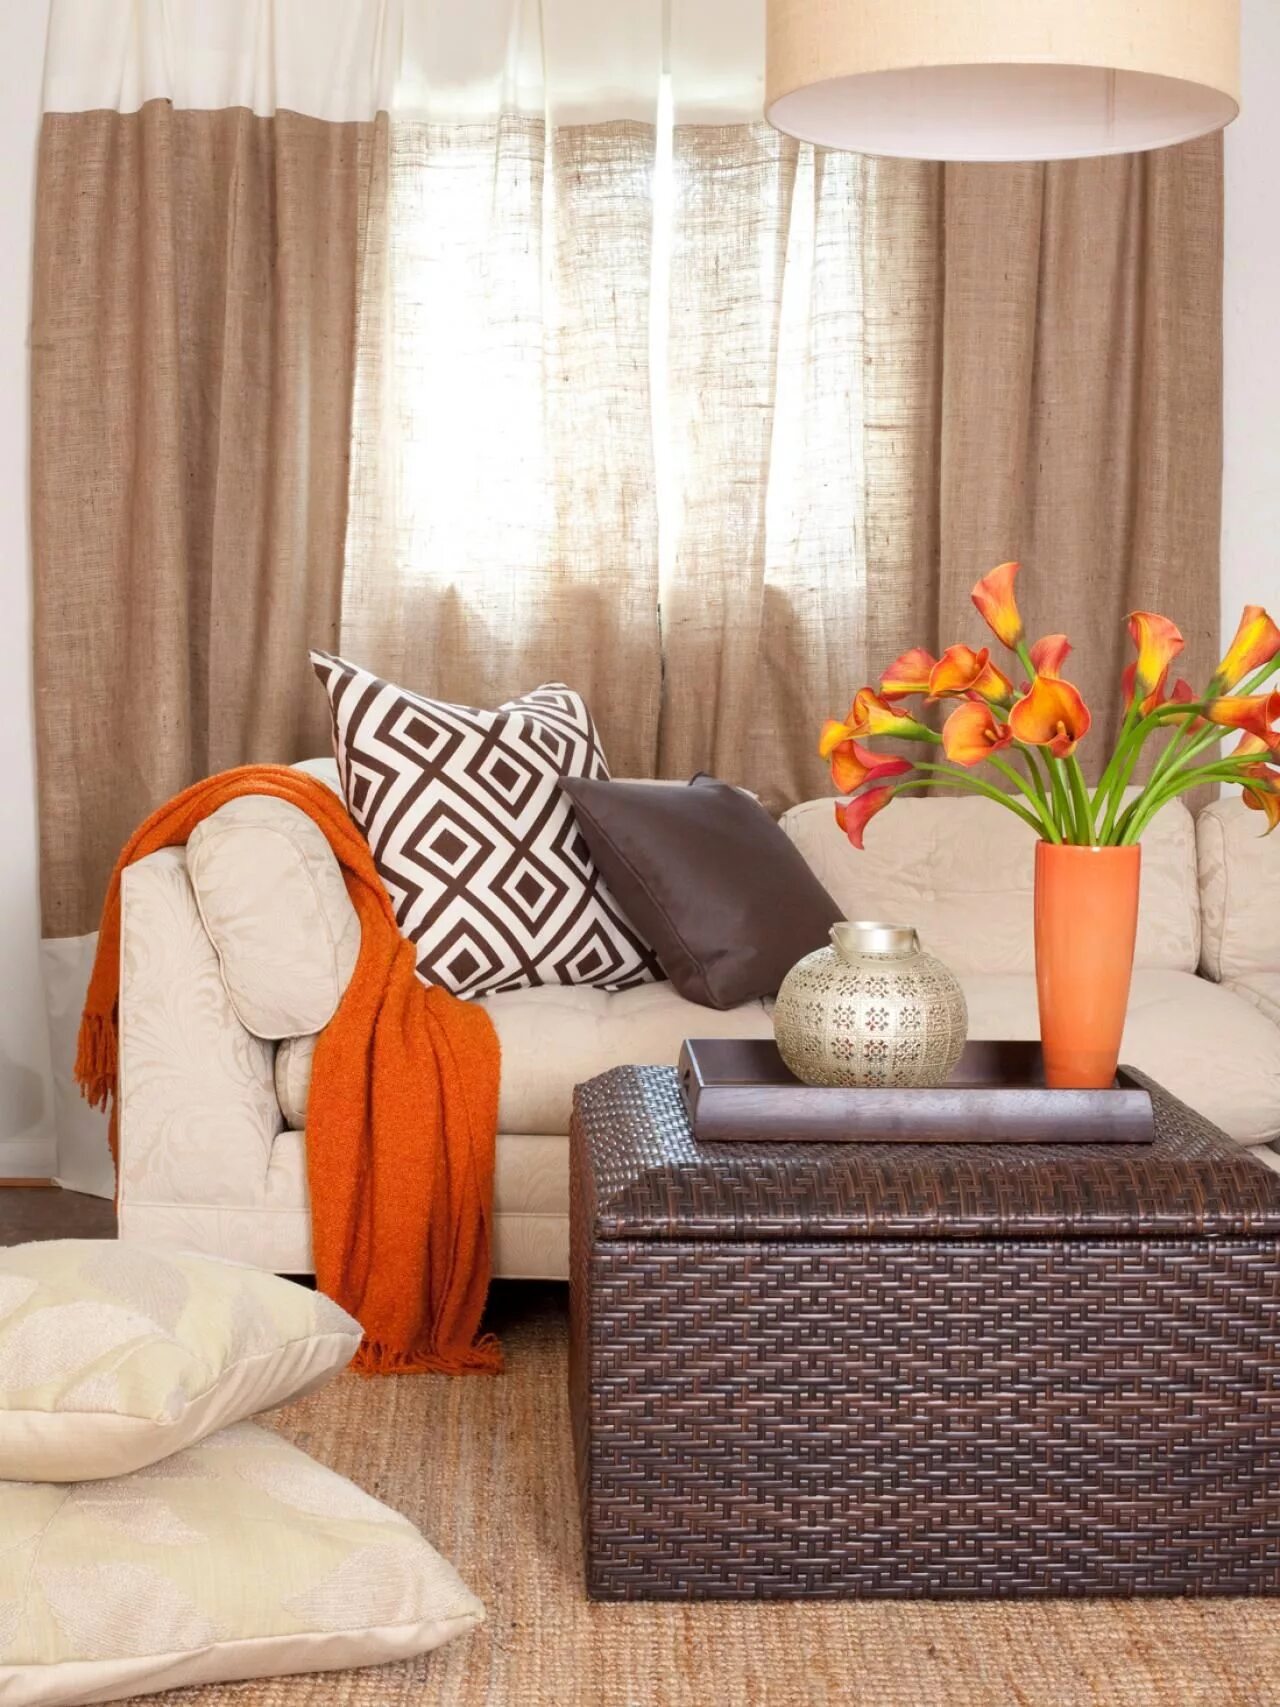 Коричнев текстиль. Сочетание оранжевого в интерьере. Оранжевые шторы в интерьере гостиной. Интерьер с оранжевыми акцентами. Сочетание оранжевого и коричневого в интерьере.